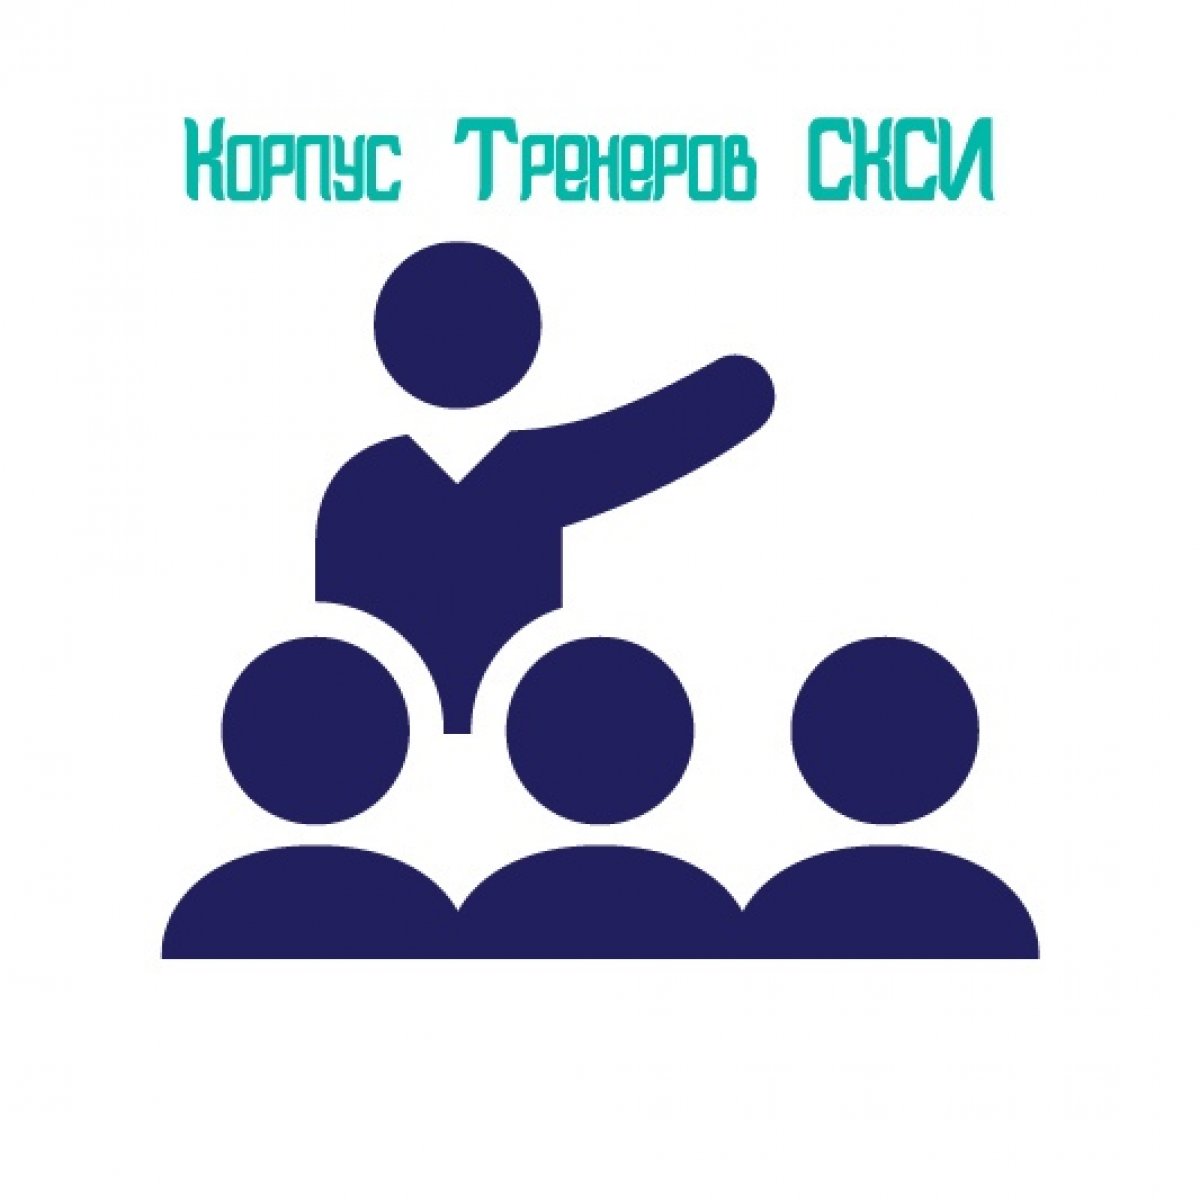 1-15 апреля на базе Северо-Кавказского социального института будет проводится «Школа тренеров СКСИ», целью которой будет обучение молодых людей тренерскому мастерству для дальнейшего формирования «Корпуса тренеров СКСИ».